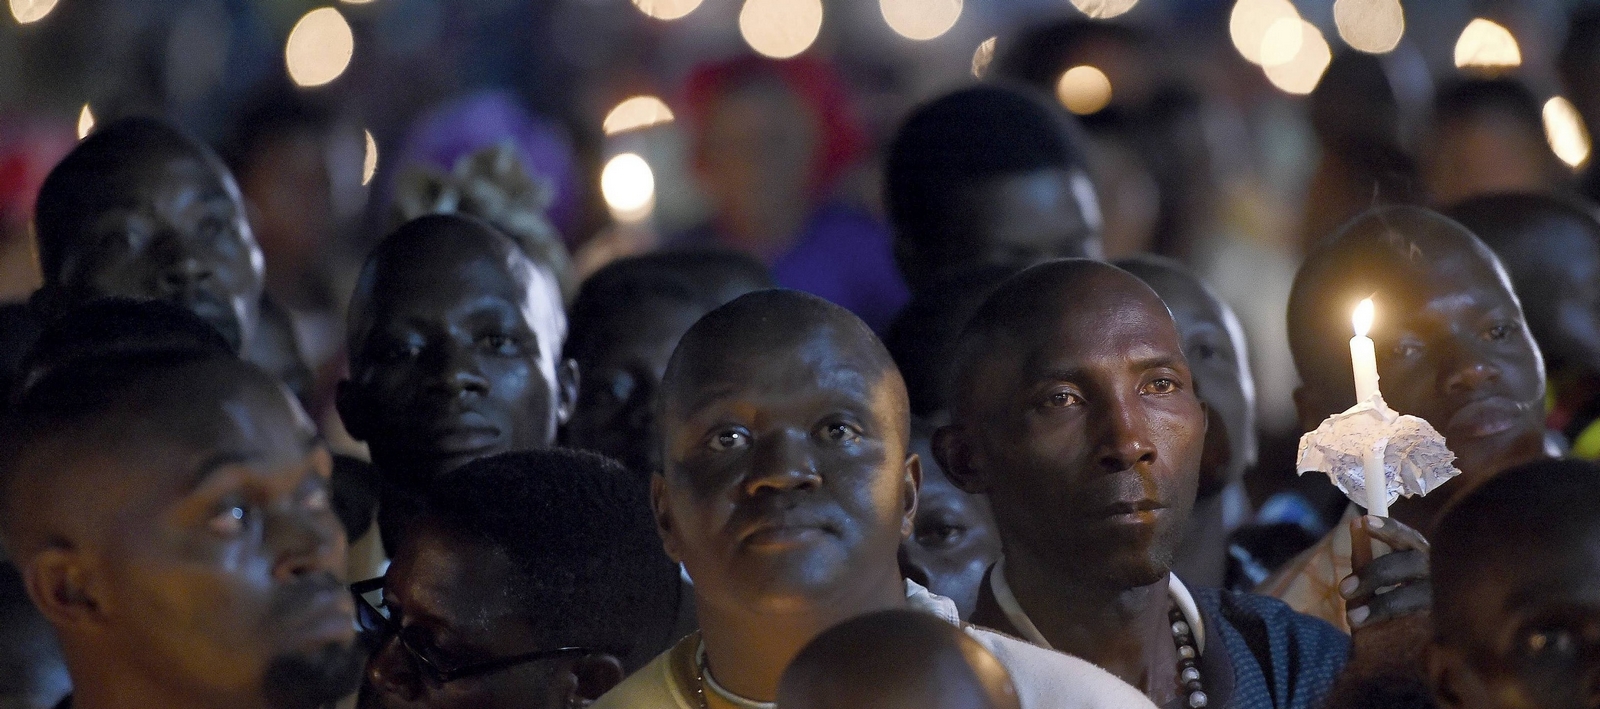 ¿Por qué el Cristianismo Baja en Occidente y Crece Fuerte en África?